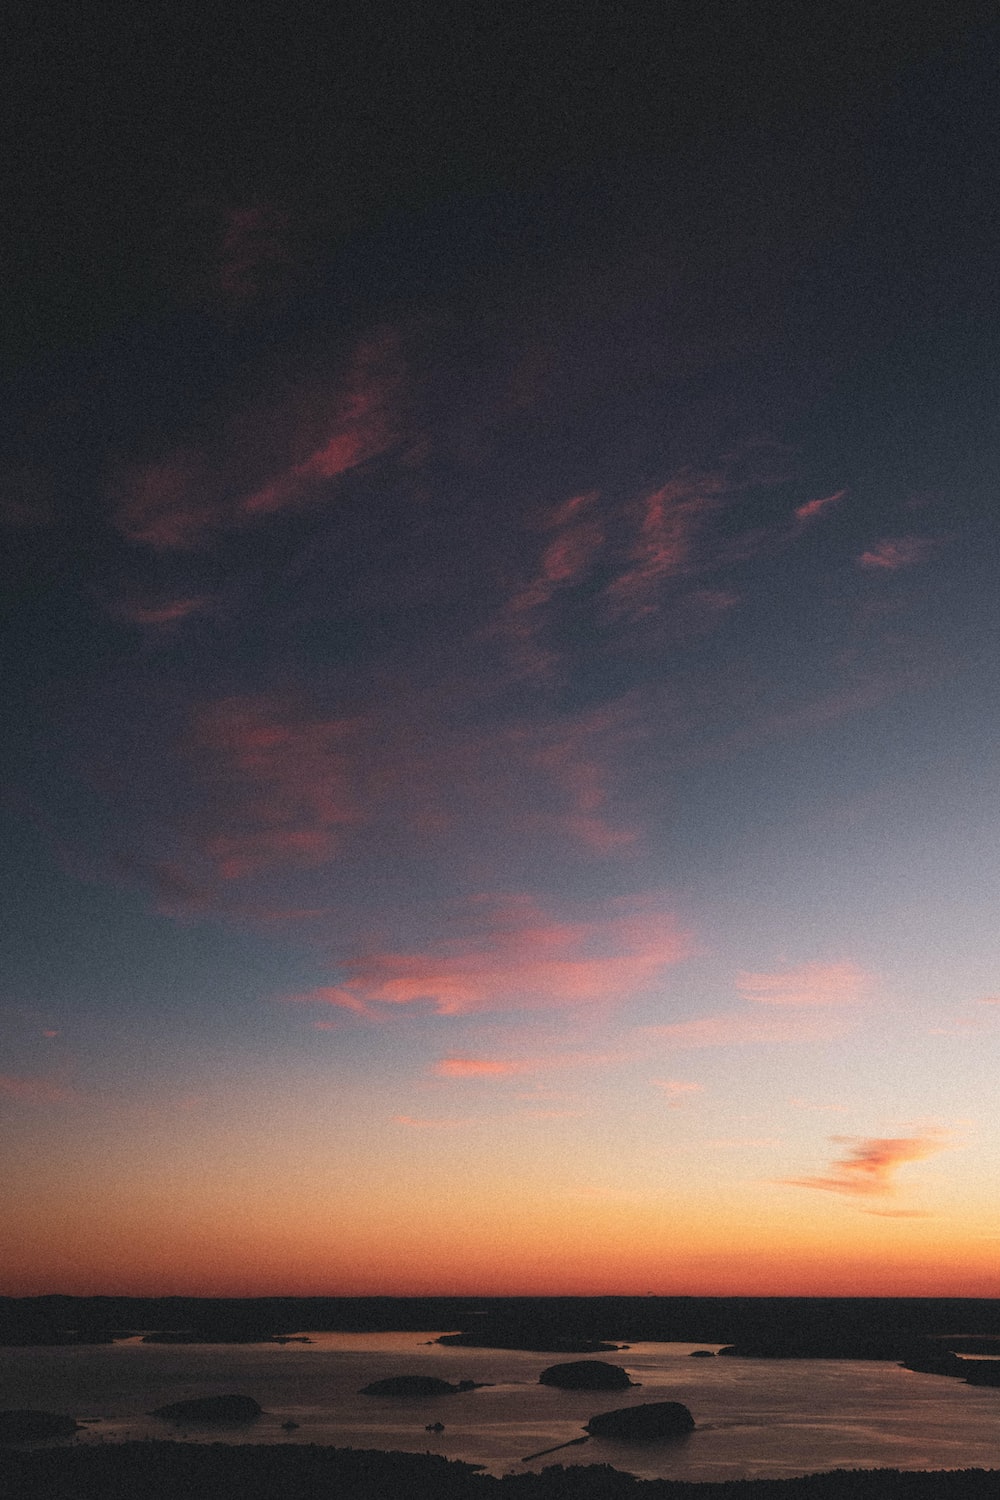 Blue And Orange Sky During Sunset Photo Image